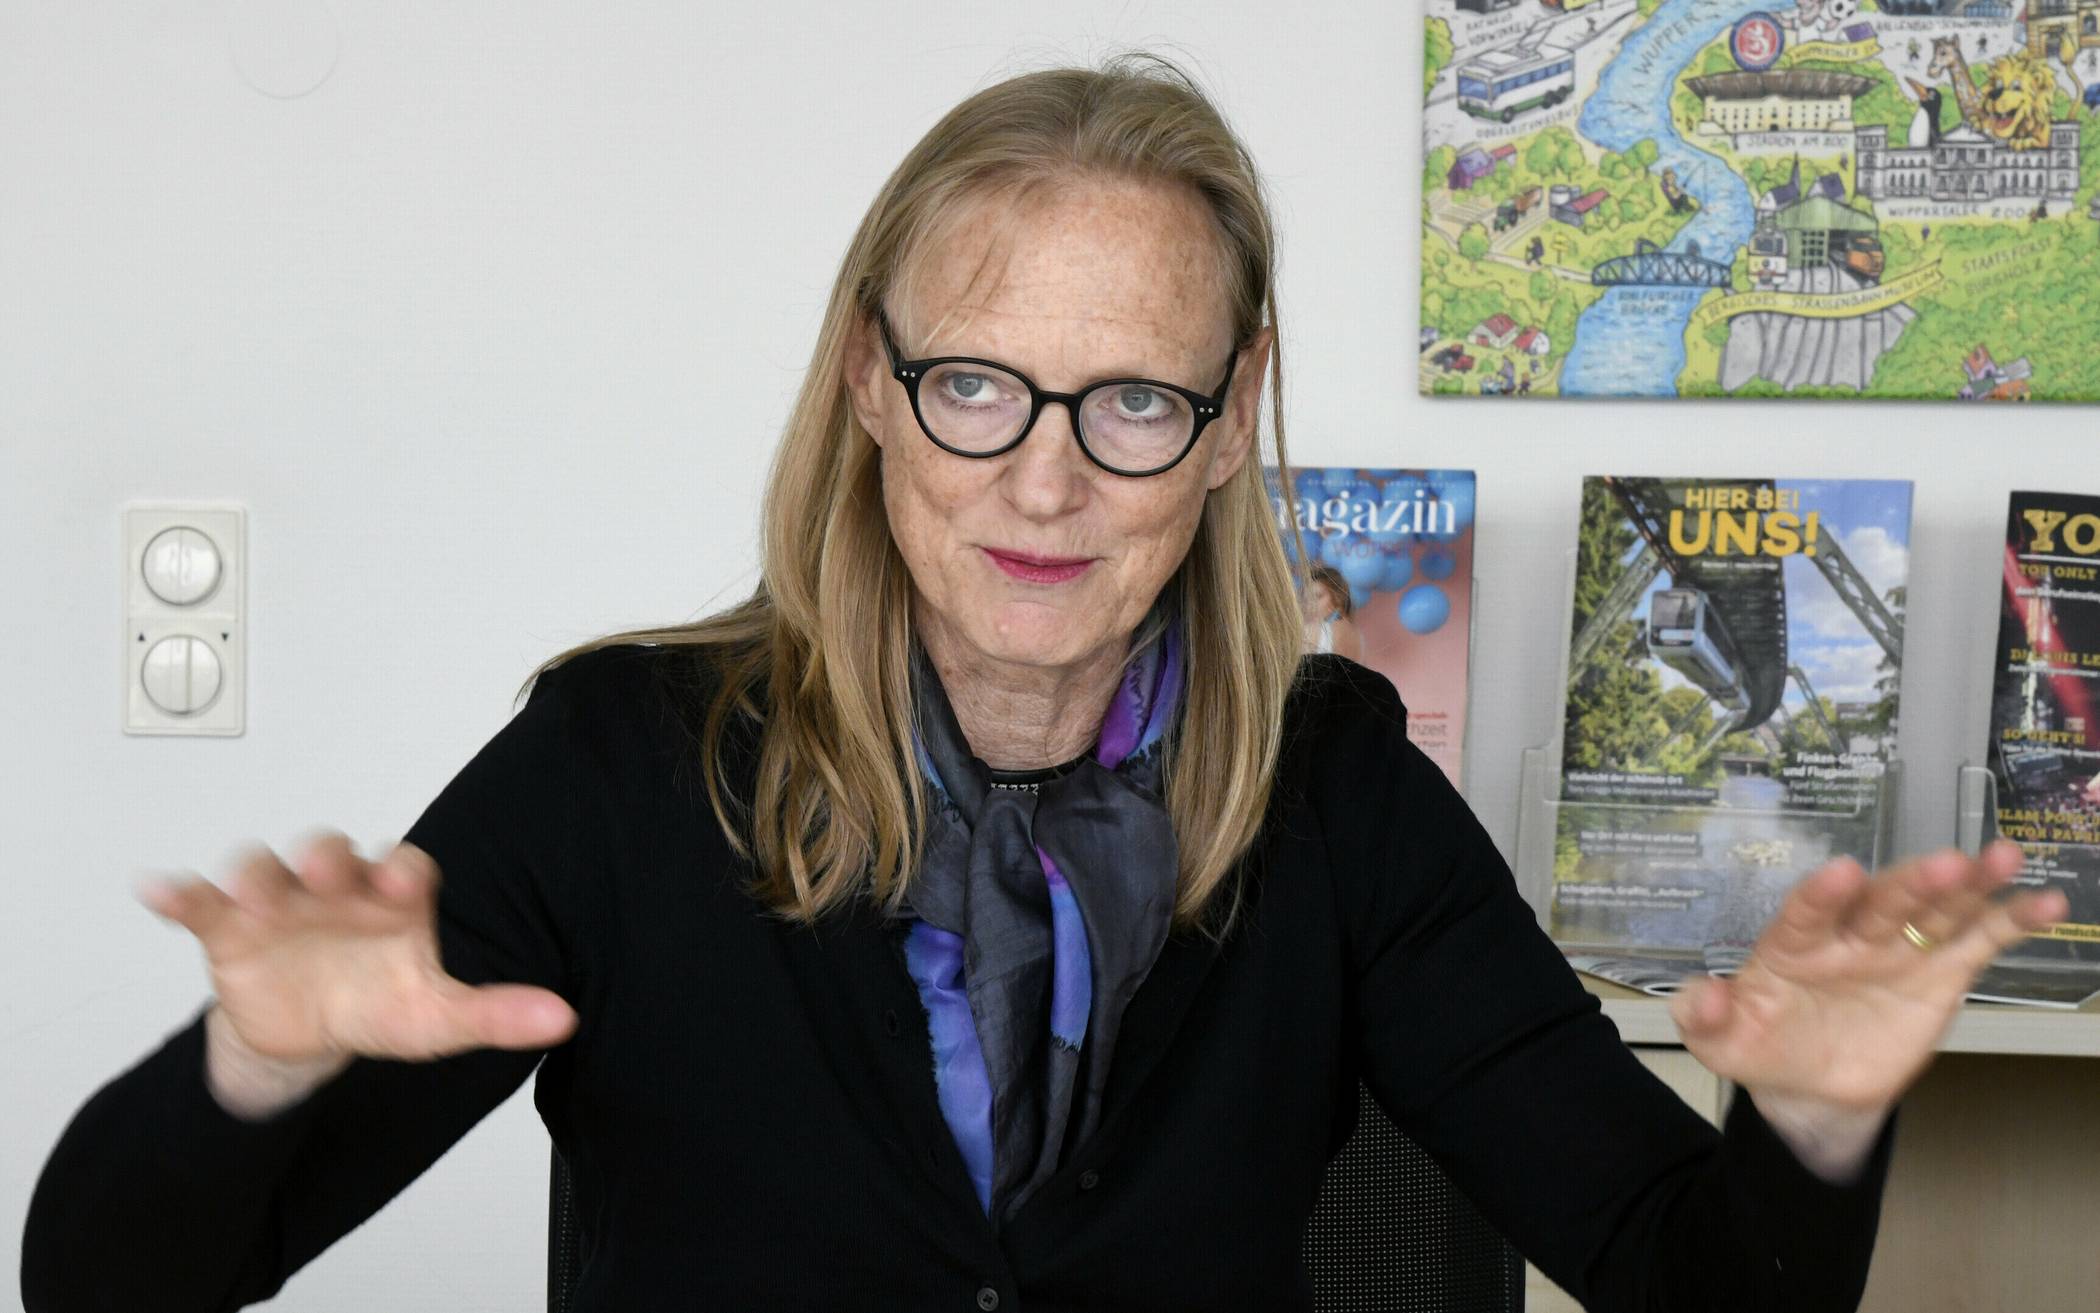   Professor Dr. Birgitta Wolff dirigiert seit zehn Monaten das Geschehen an der Bergischen Universität Wuppertal.  